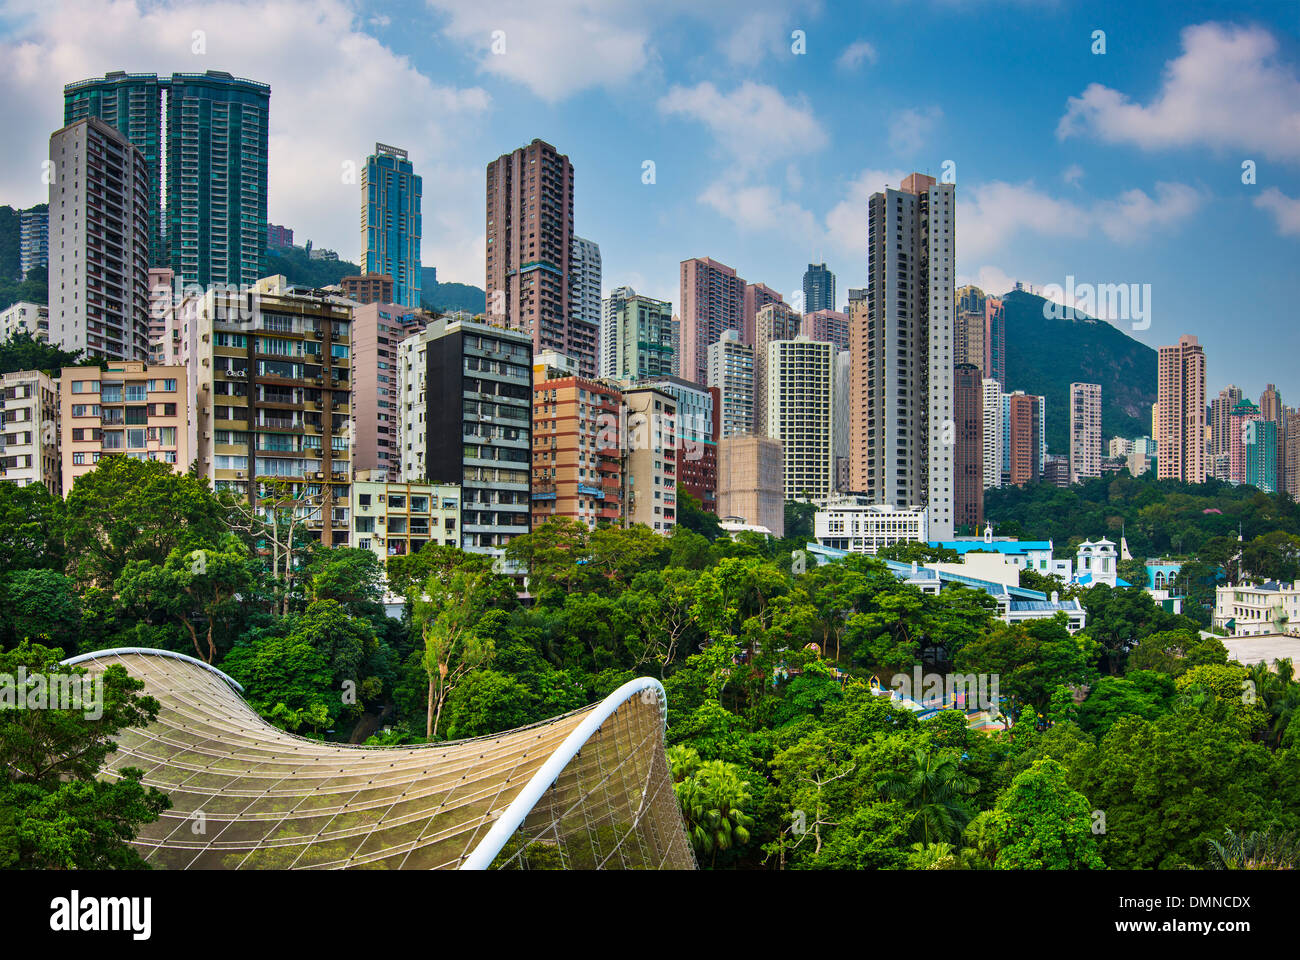 Hong Kong Park in Hong Kong, China. Stock Photo